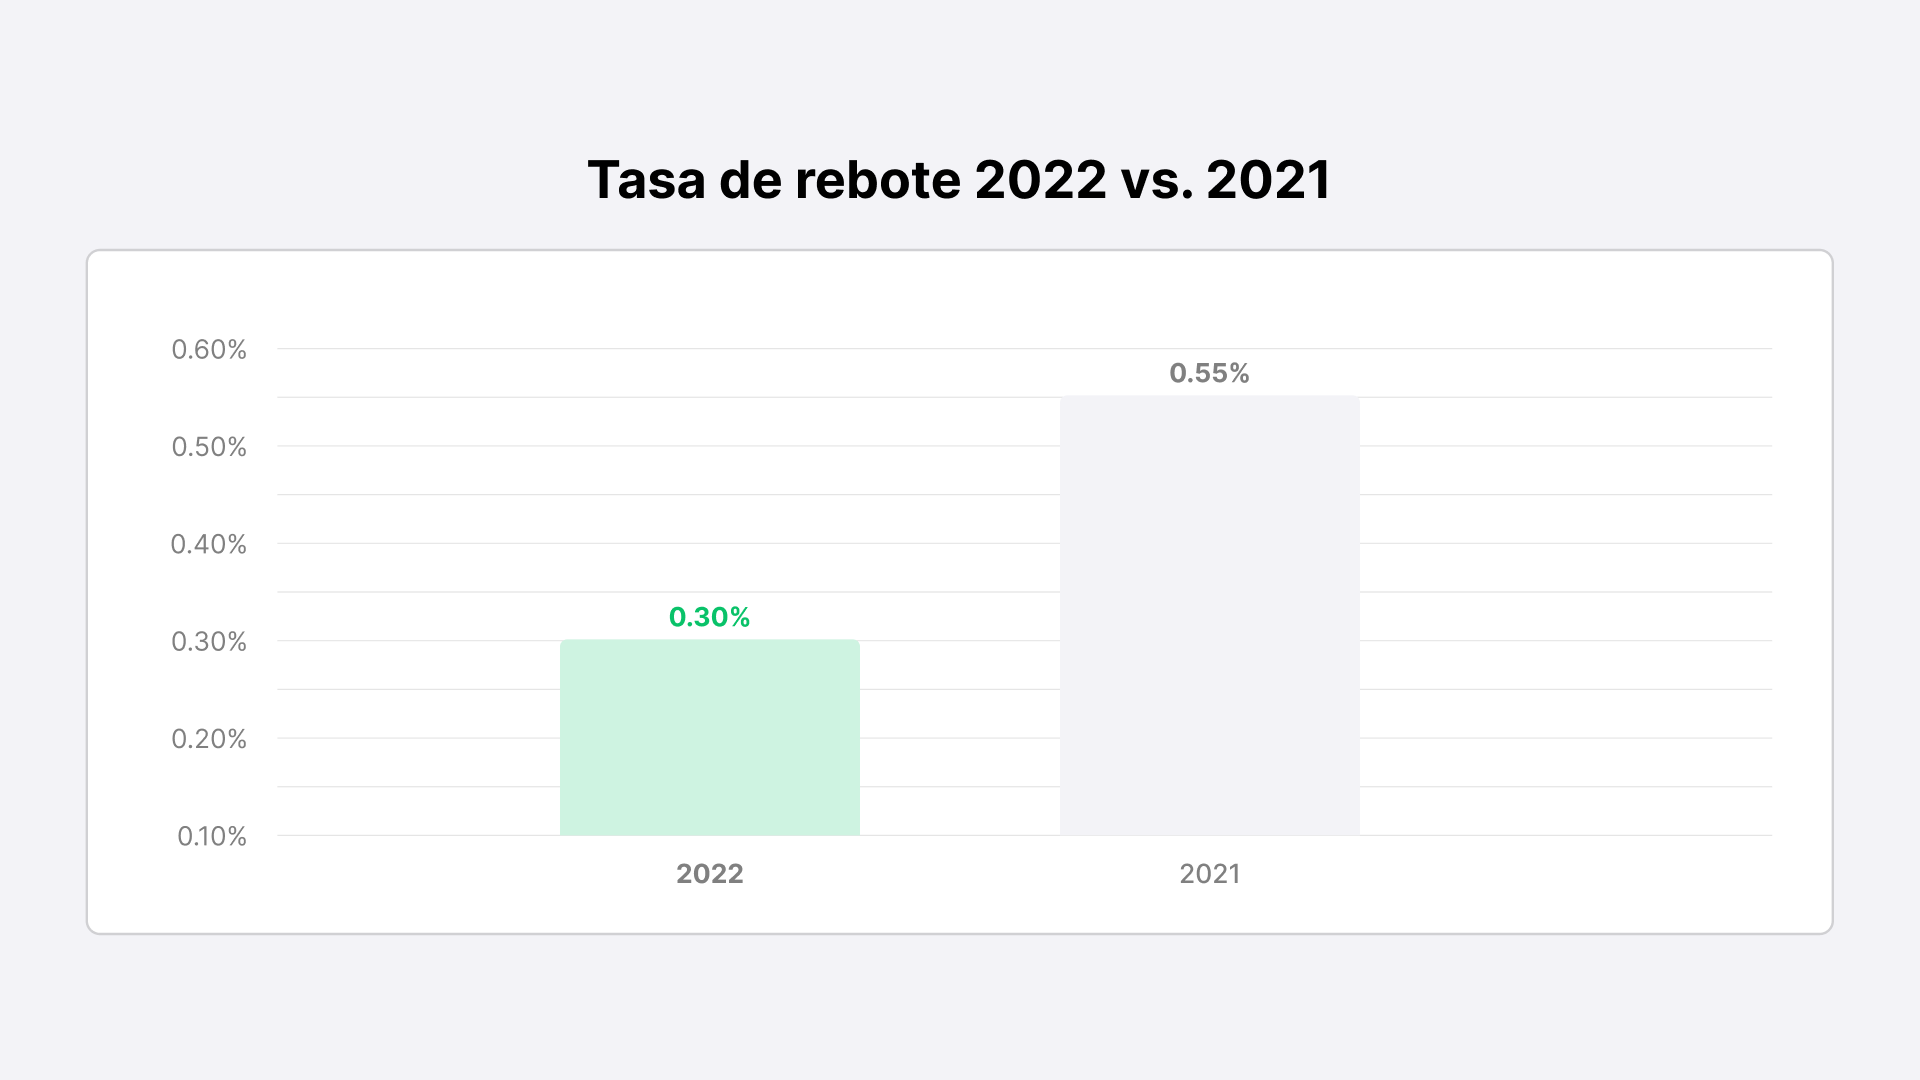 Punto de referencia para la tasa de rebote en 2022 vs 2021